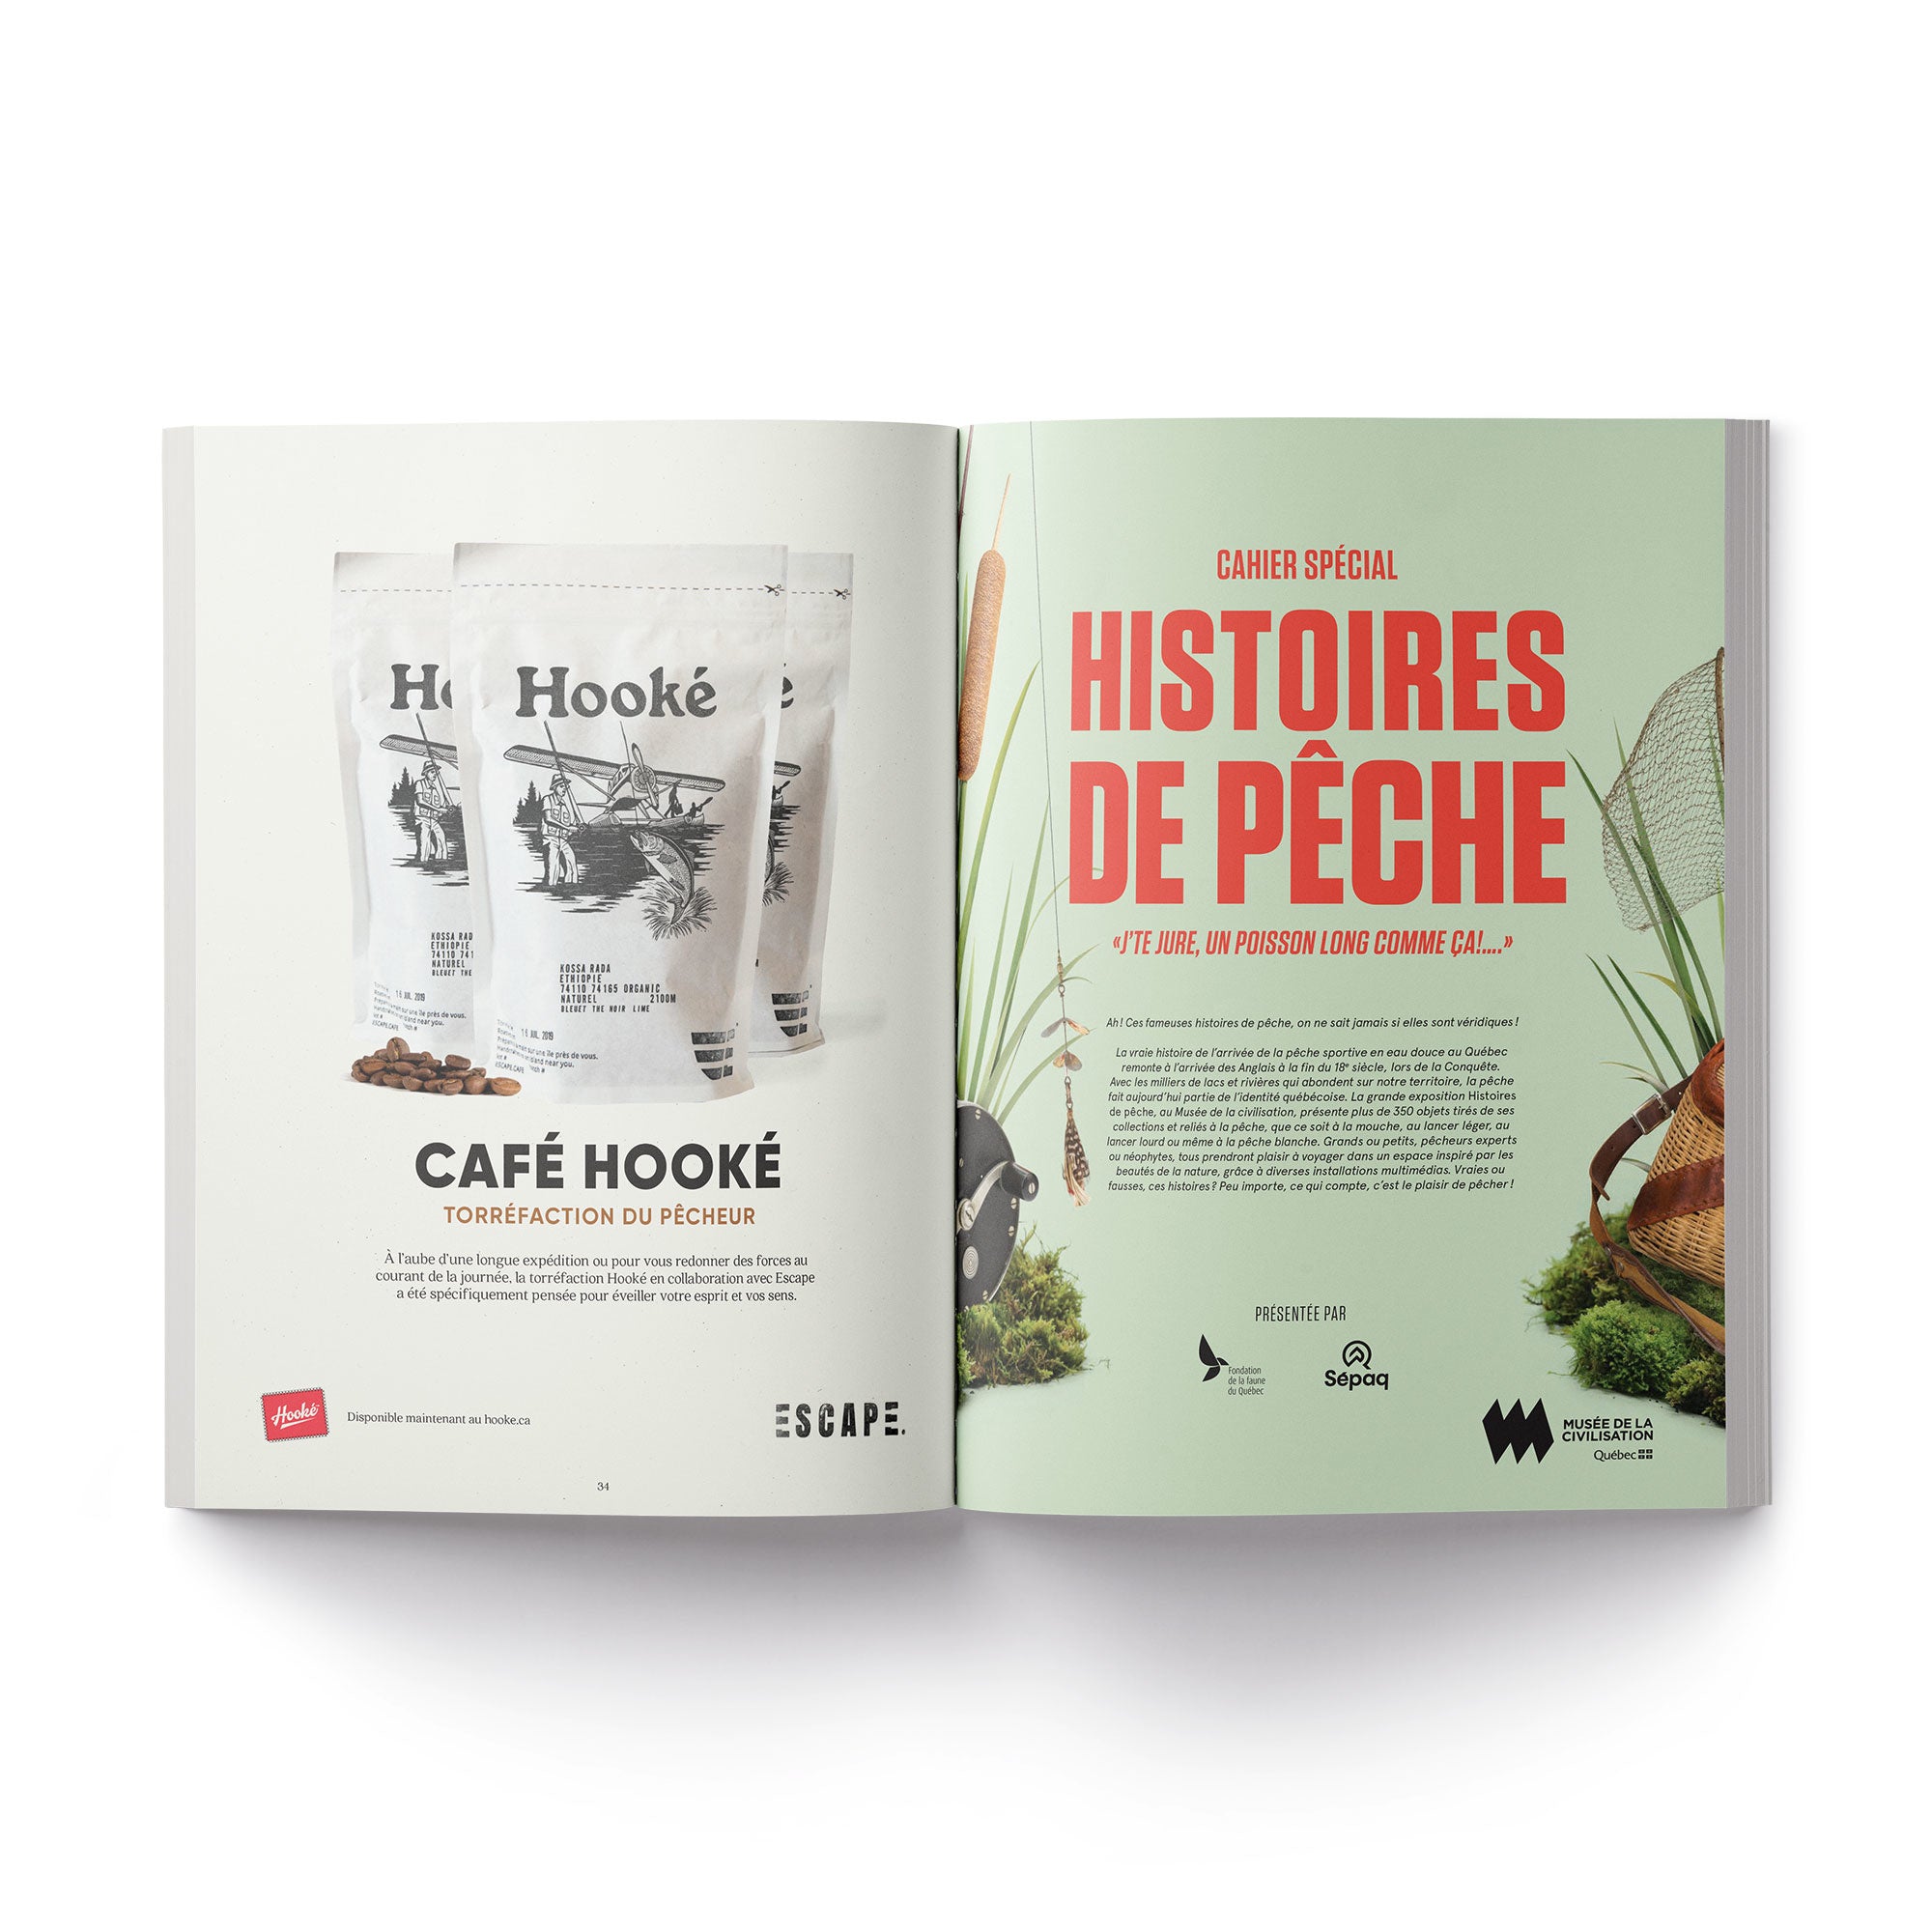 Hooké Magazine 4th Edition - Hooké